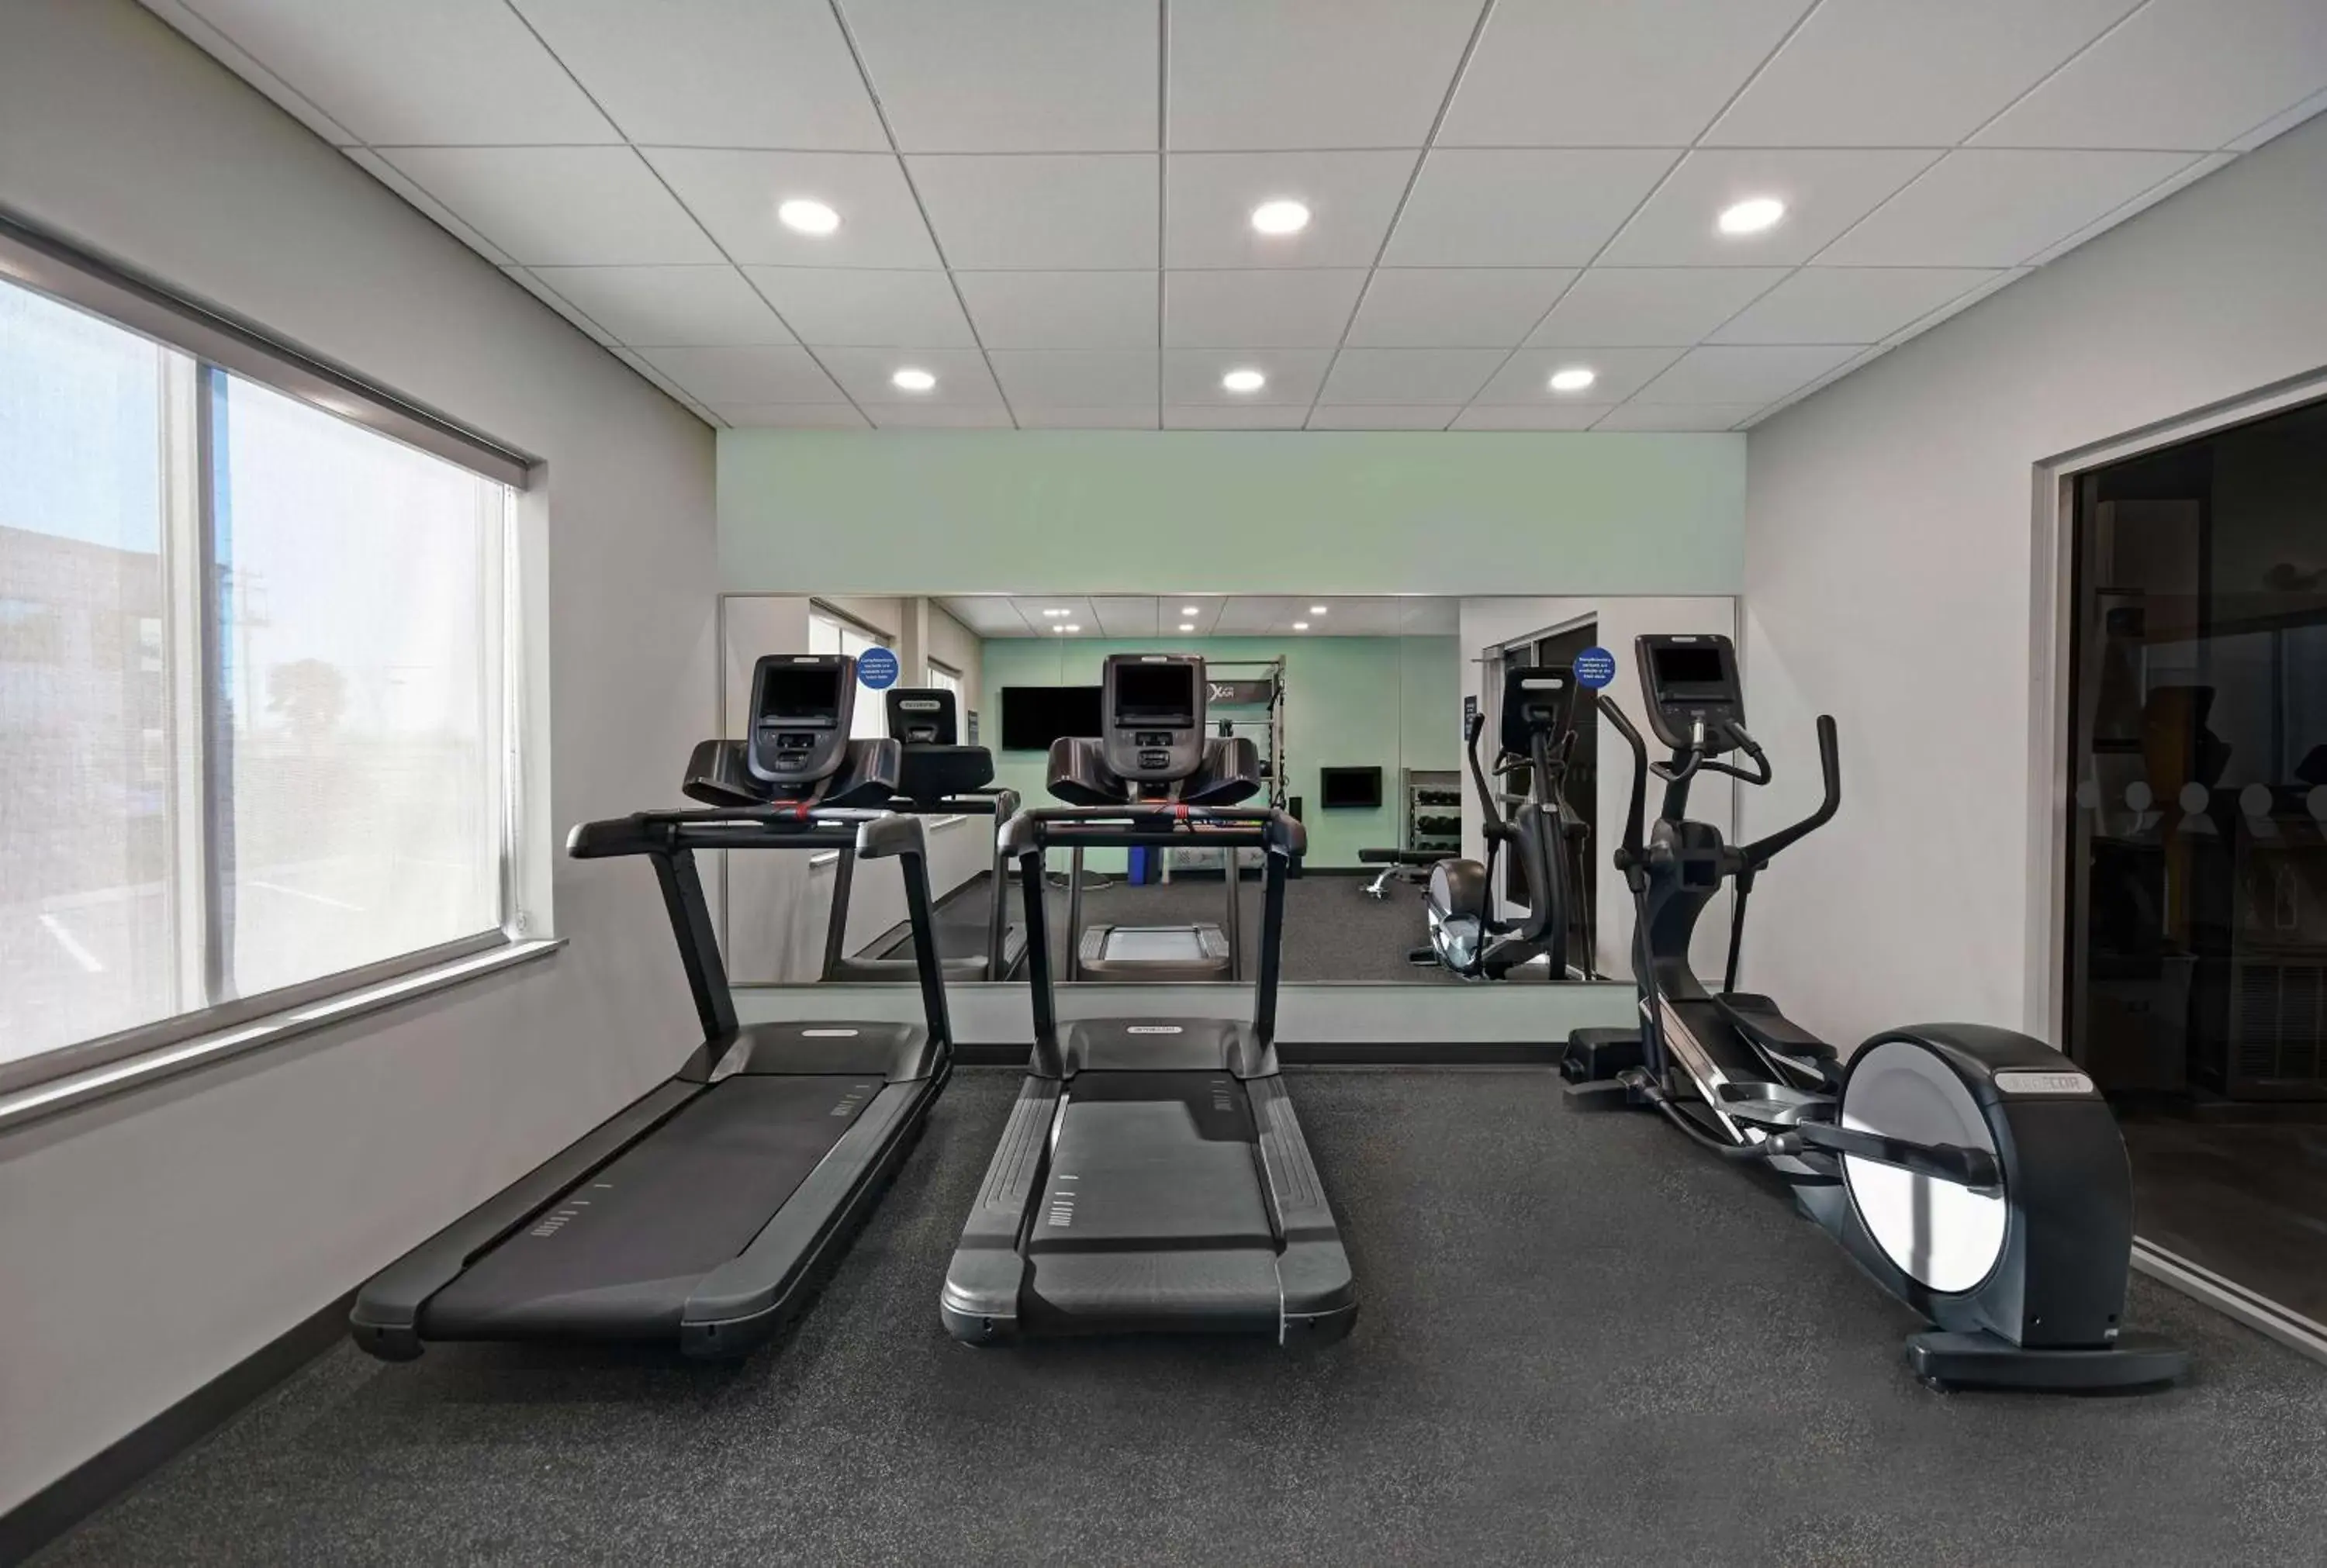 Fitness centre/facilities, Fitness Center/Facilities in Tru By Hilton Burlington